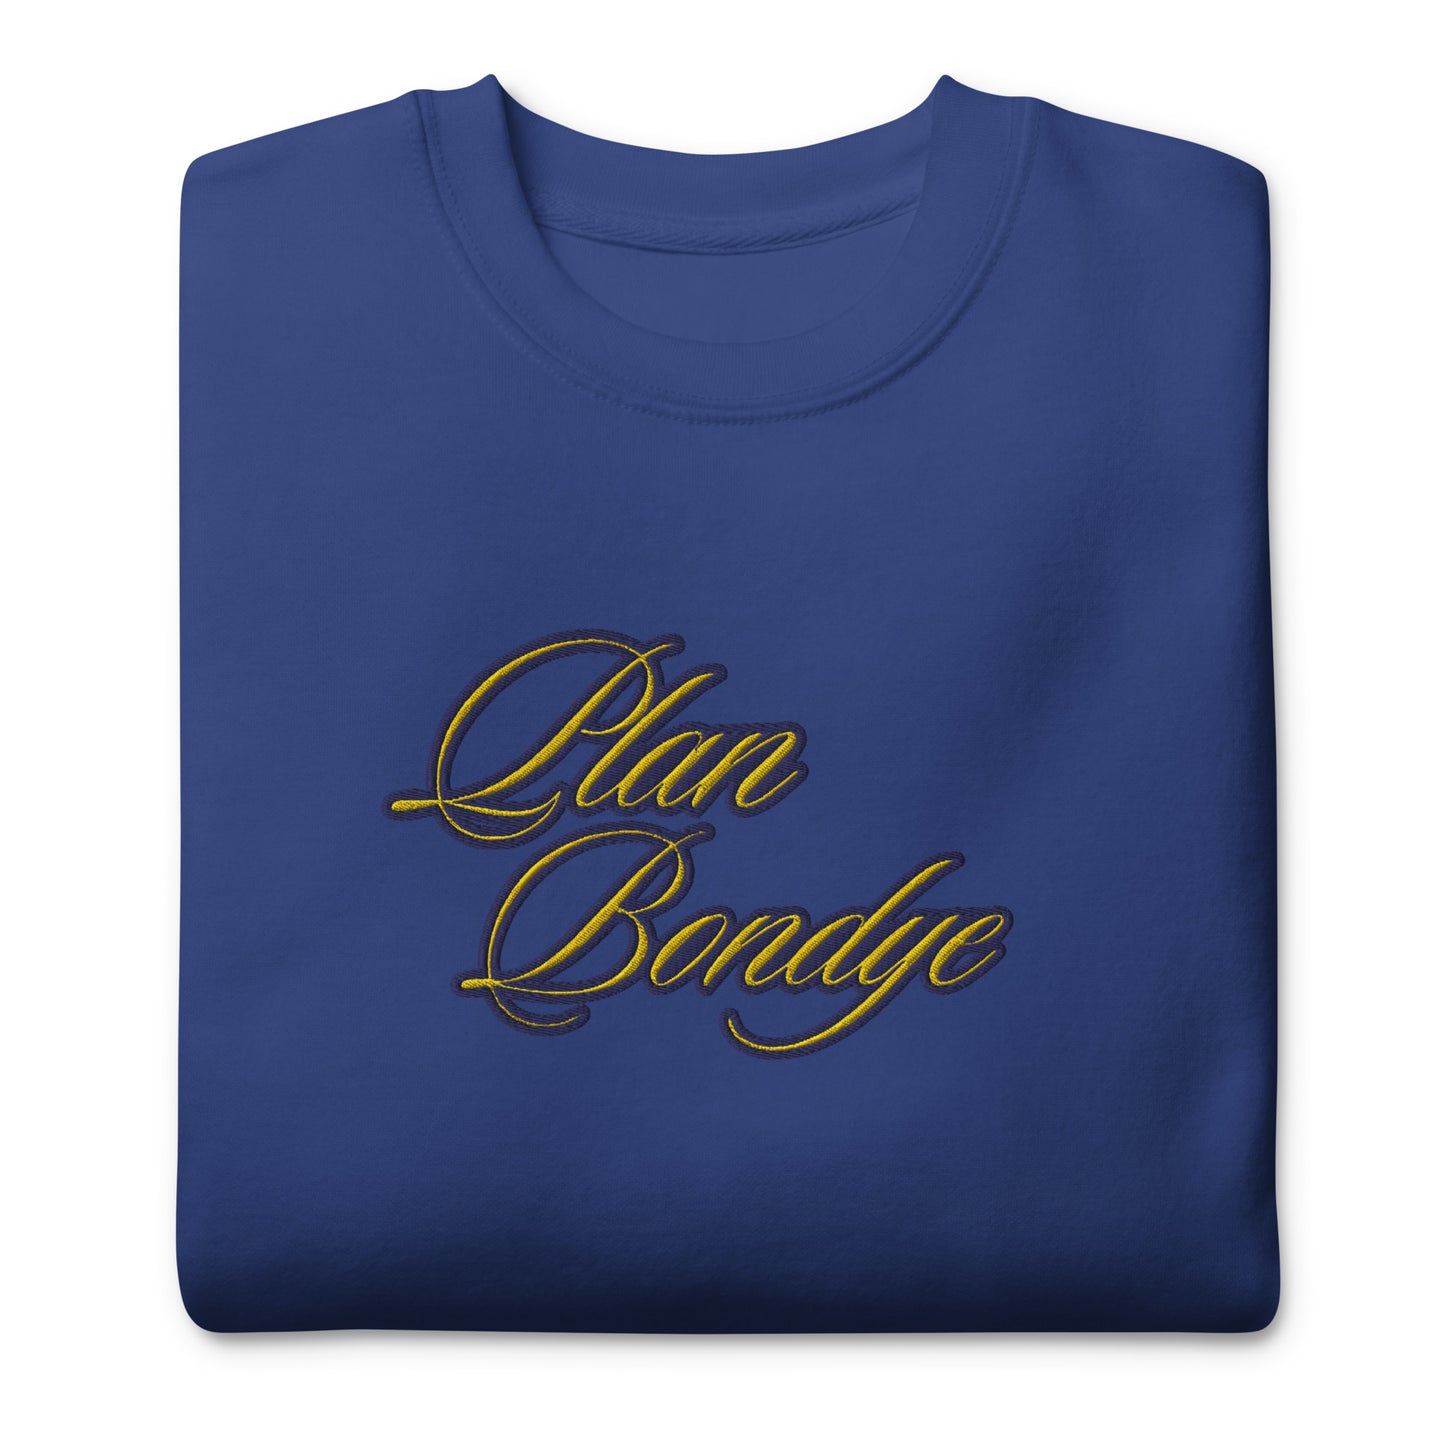 BigSmoke Soprano Clothing: BigSmoke Soprano Worldwide Collection: Heritage Sweatshirt (Haitian Creole Edition